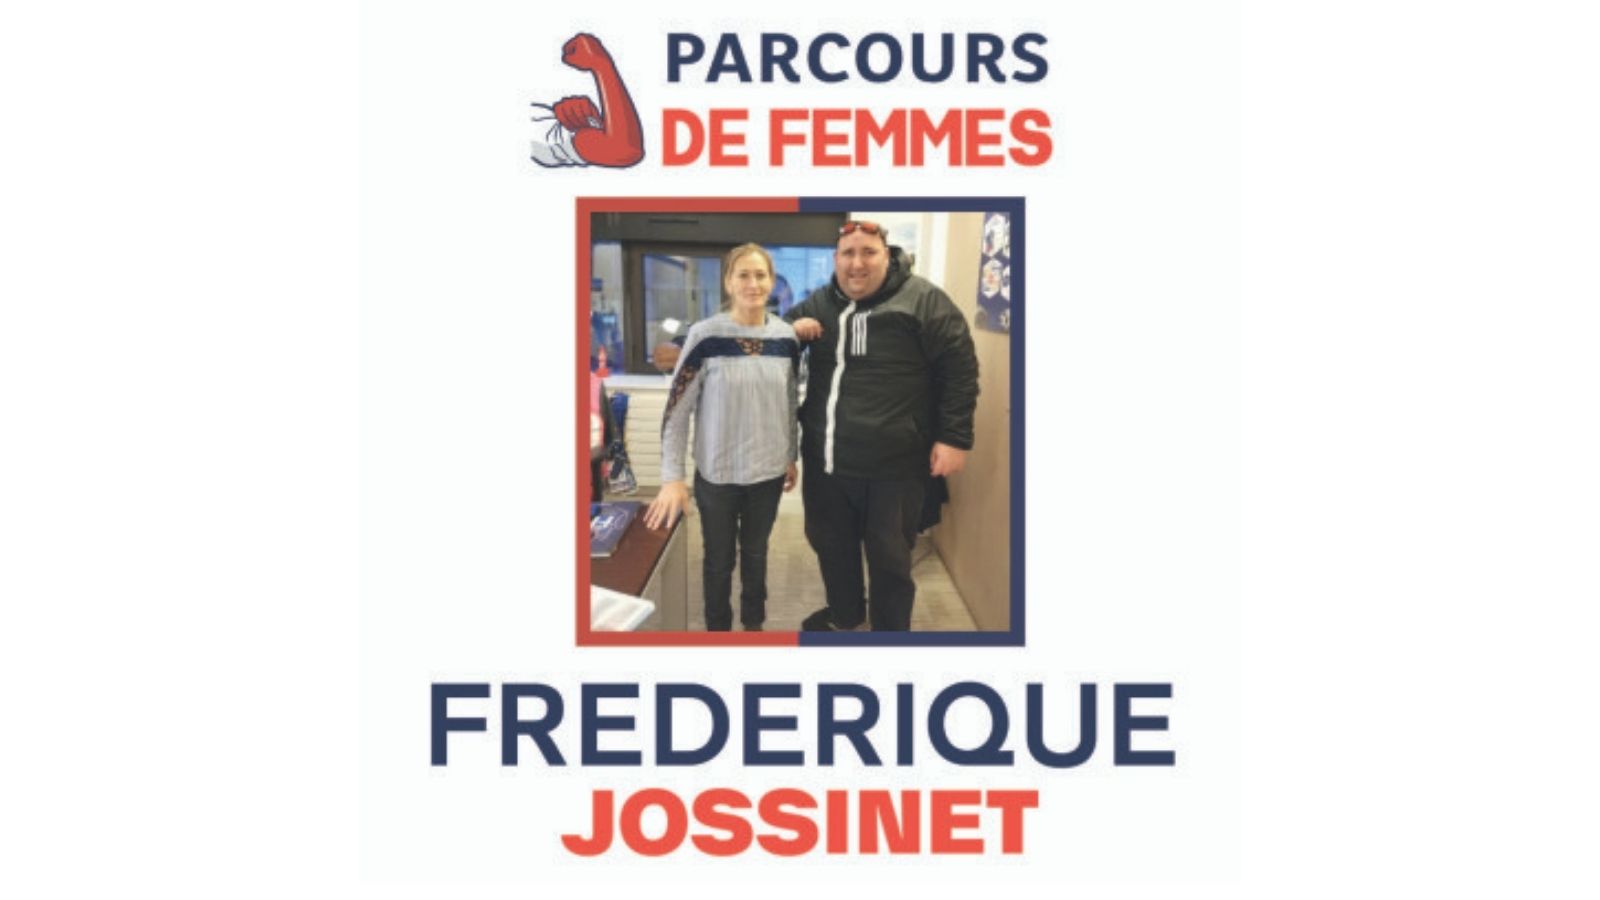 Frédérique Jossinet